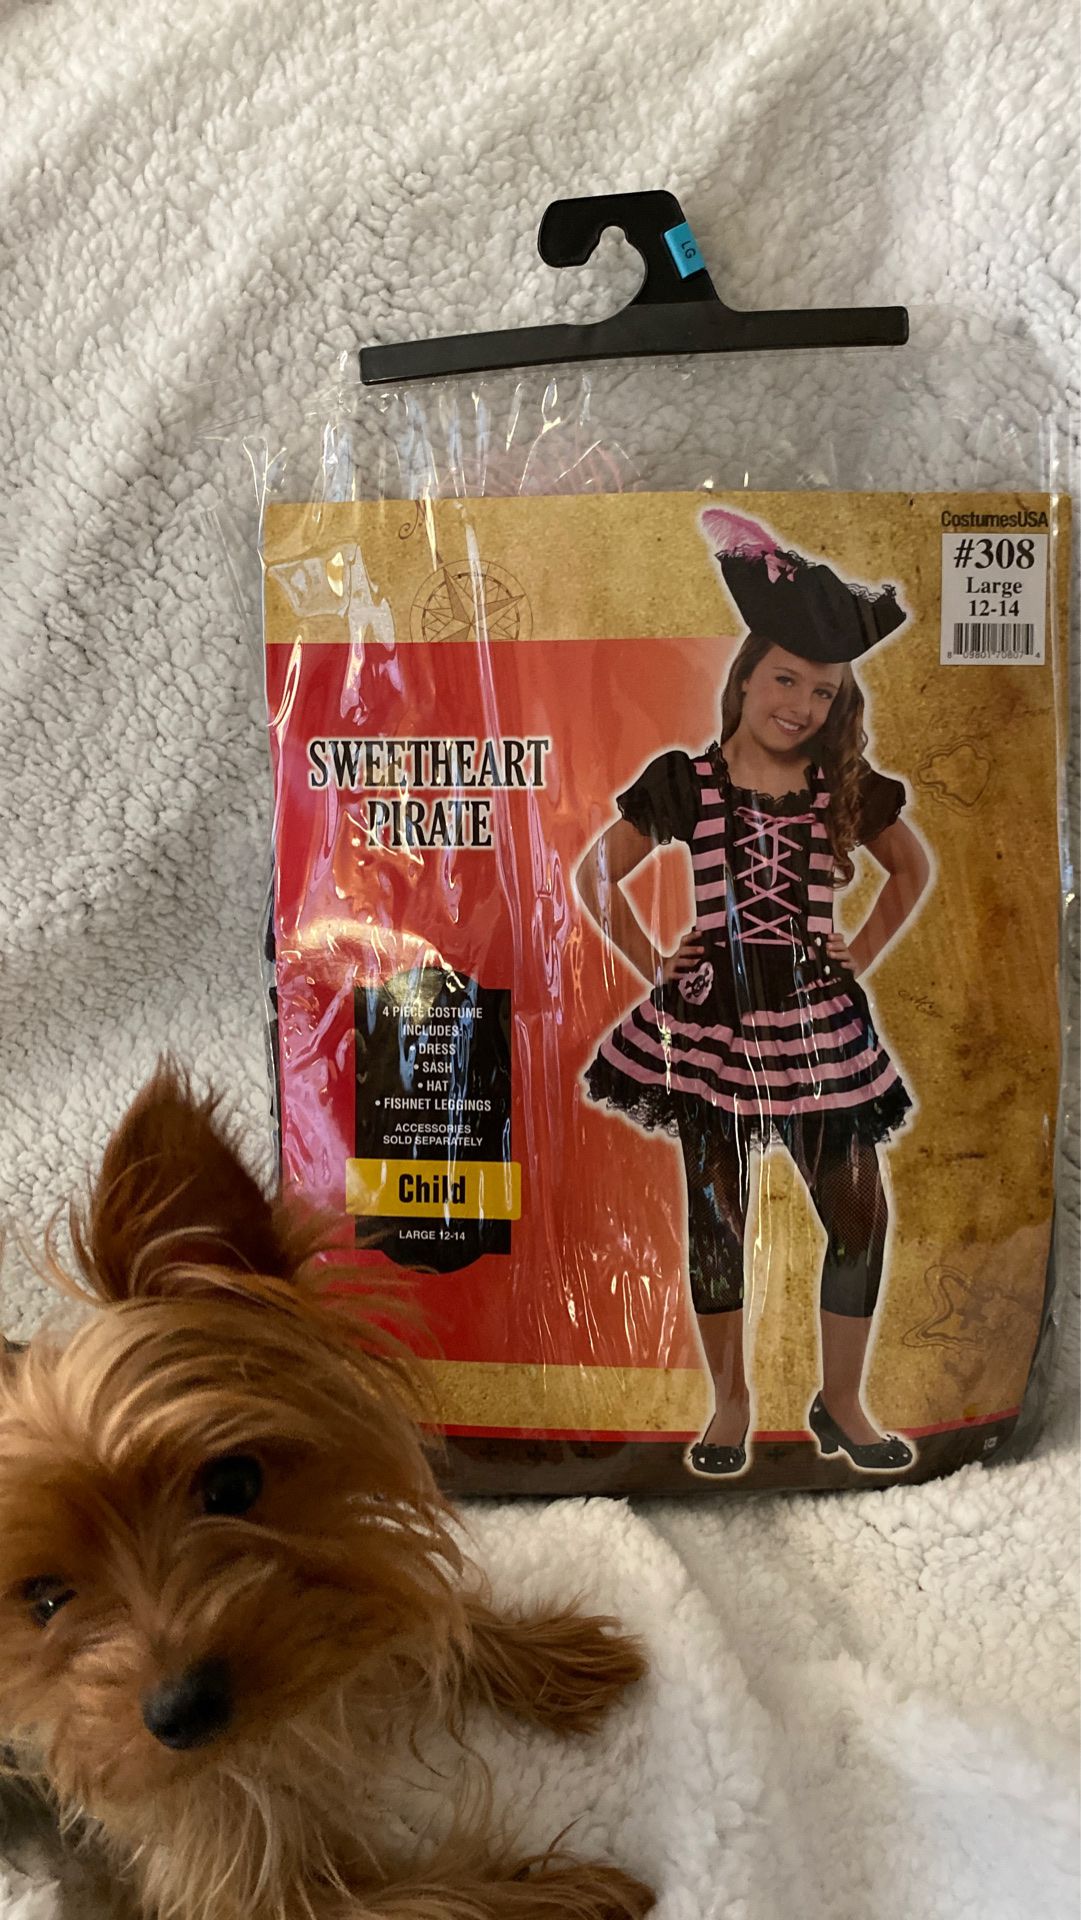 Sweetheart Pirate Girl costume